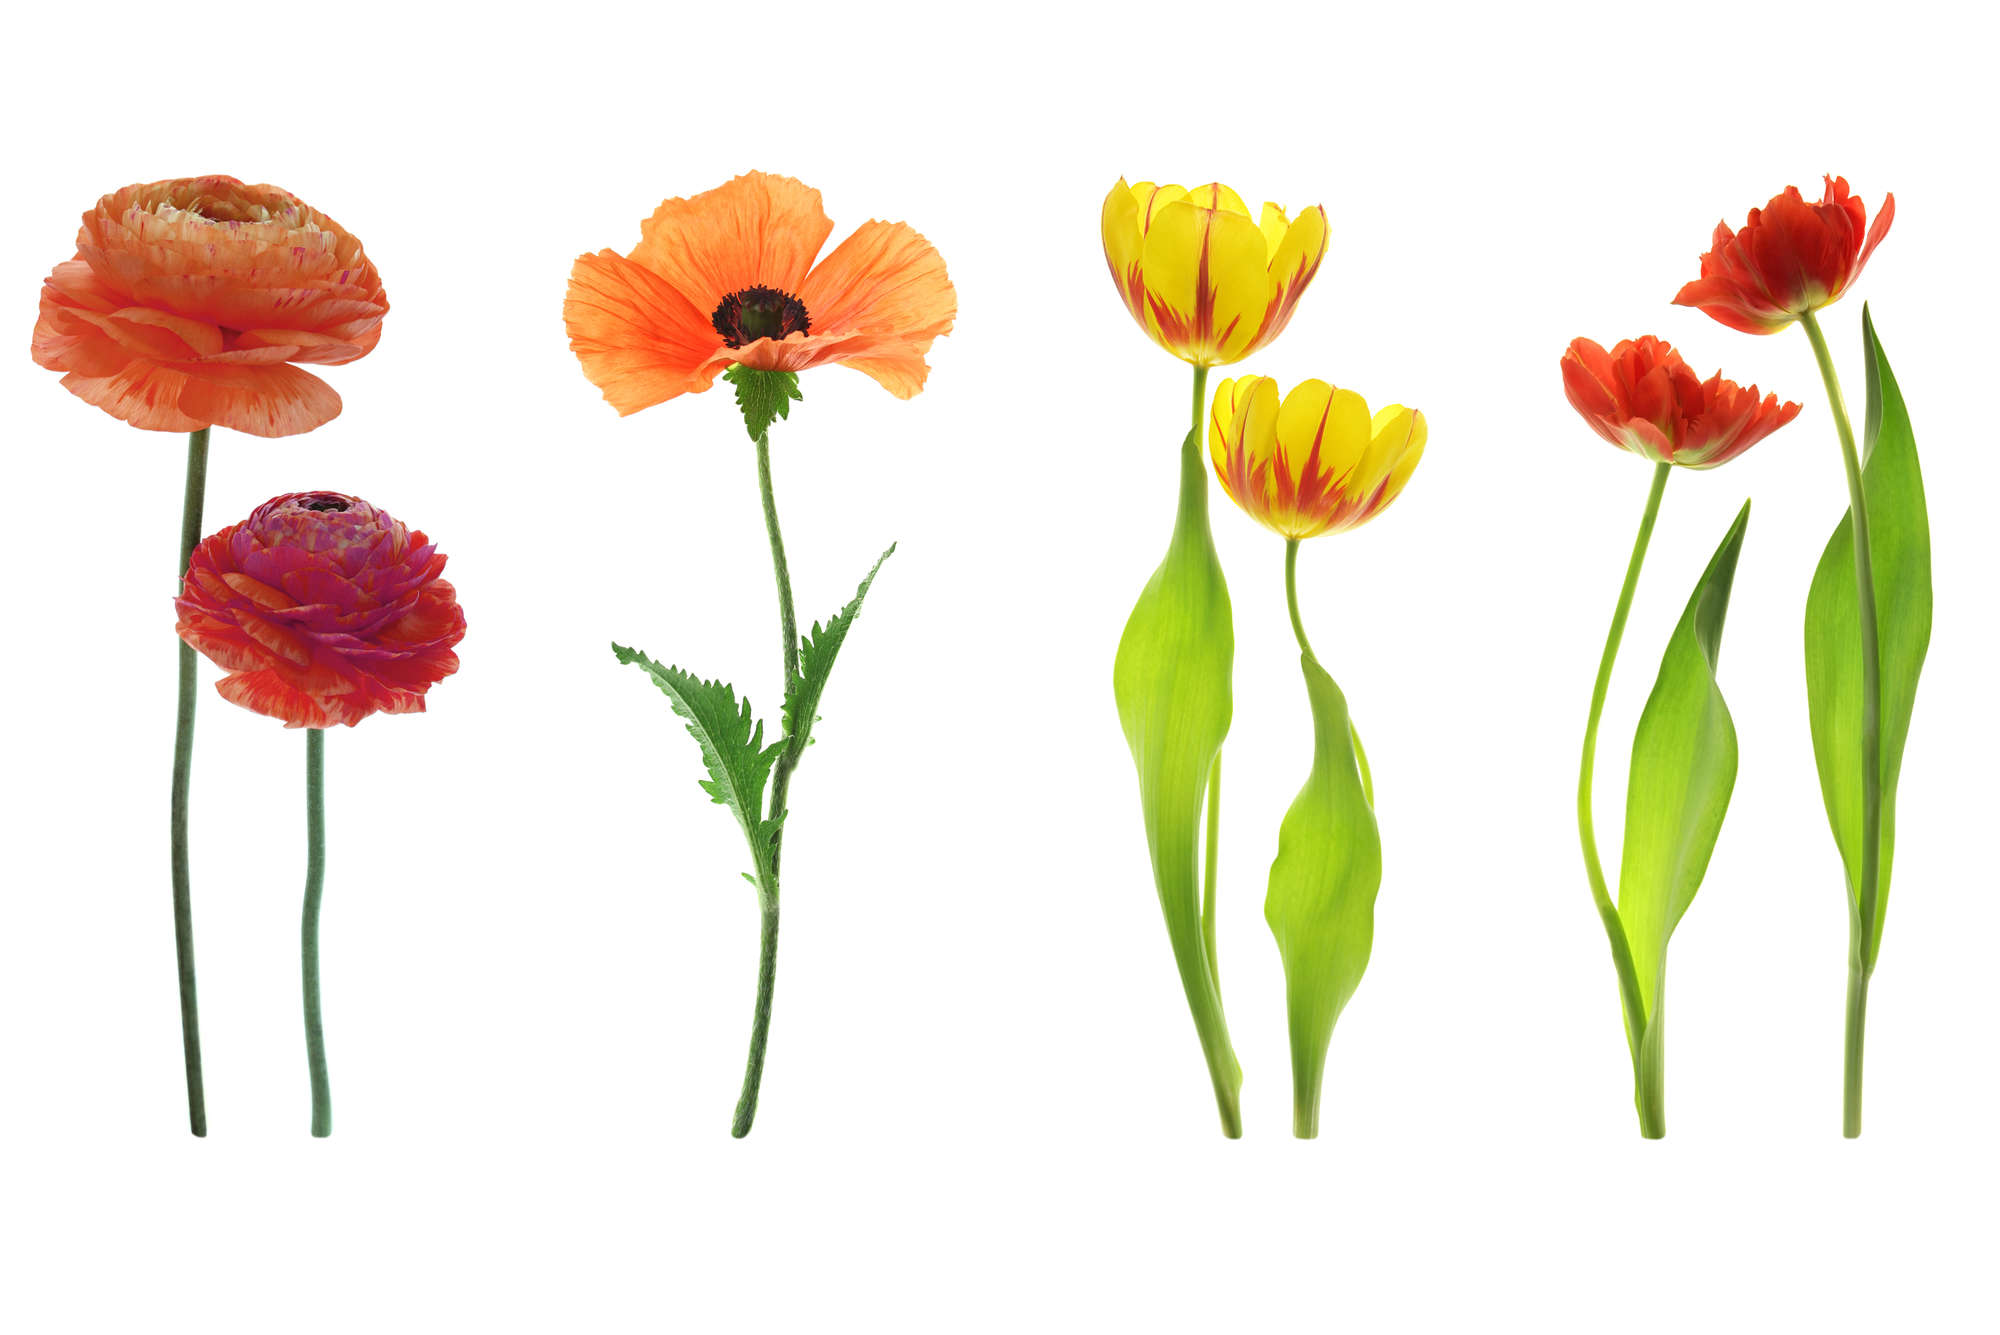             Fototapete einzelne Blumenvielfalt – Perlmutt Glattvlies
        